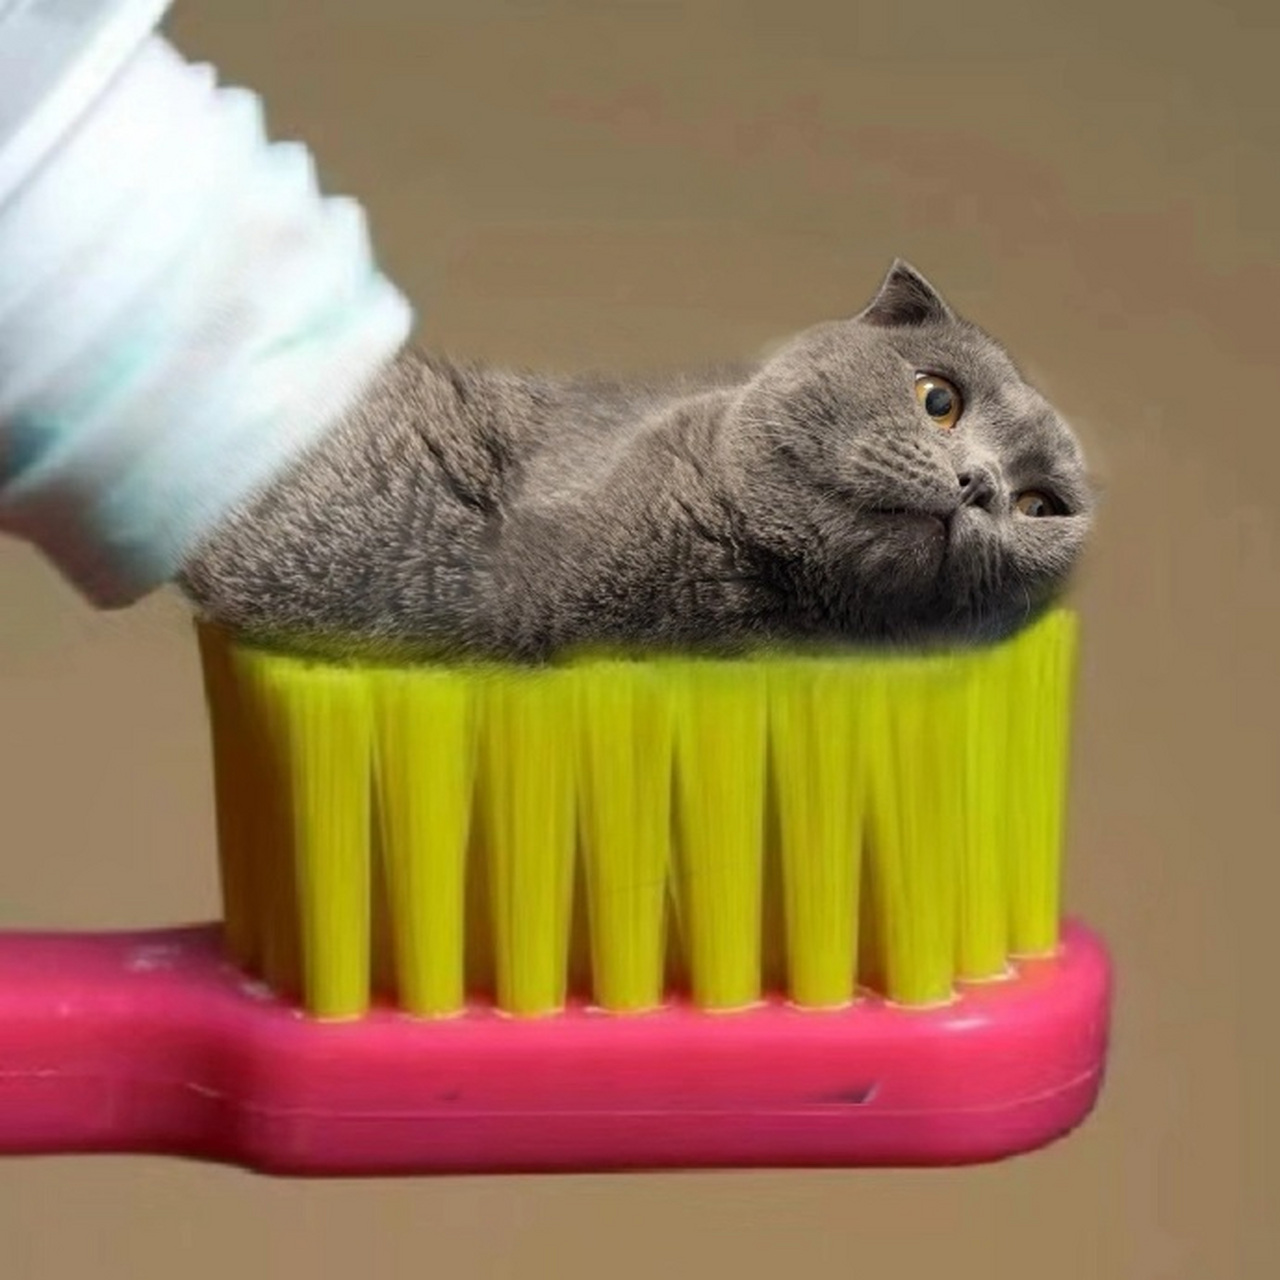 沙雕的猫咪头像图片